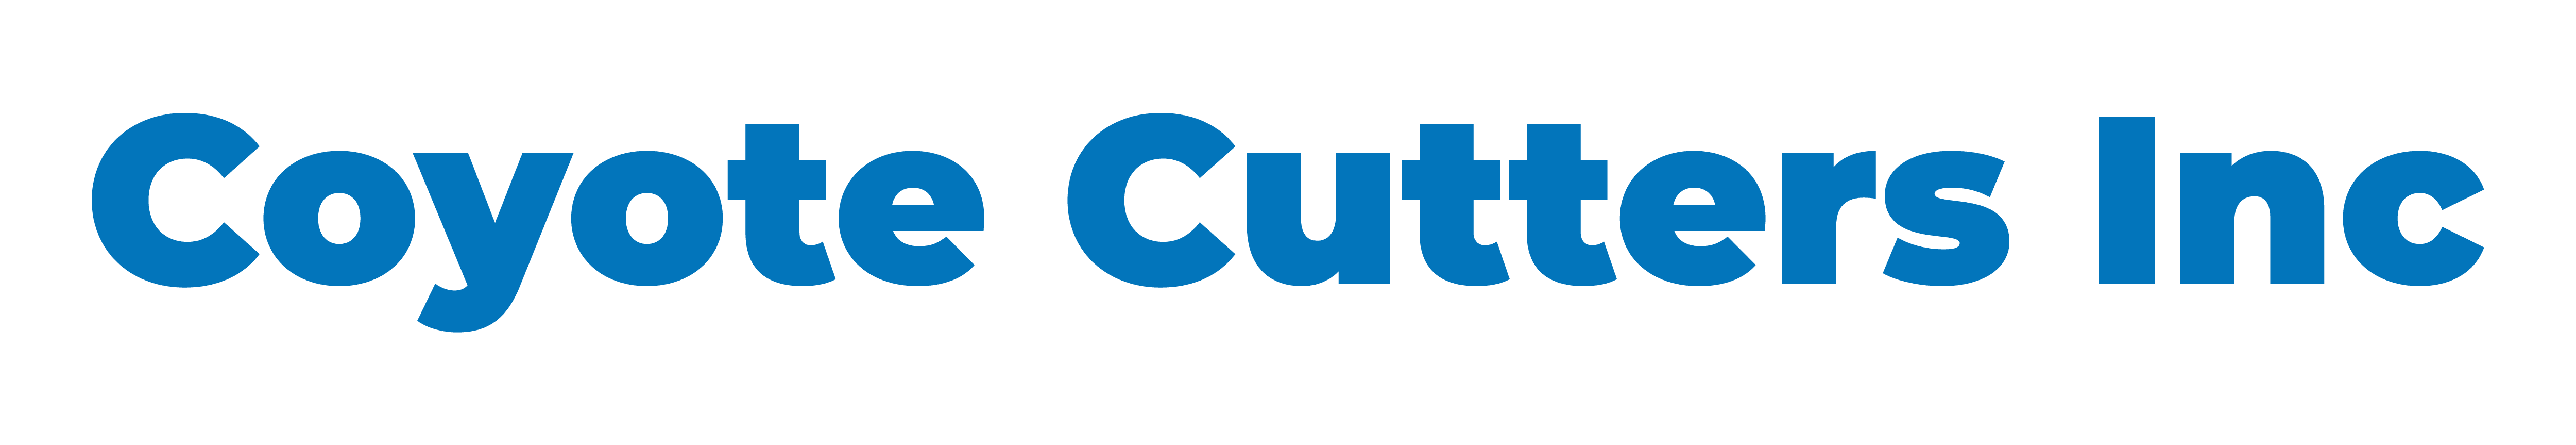 Coyote Cutters Inc logo Blue font